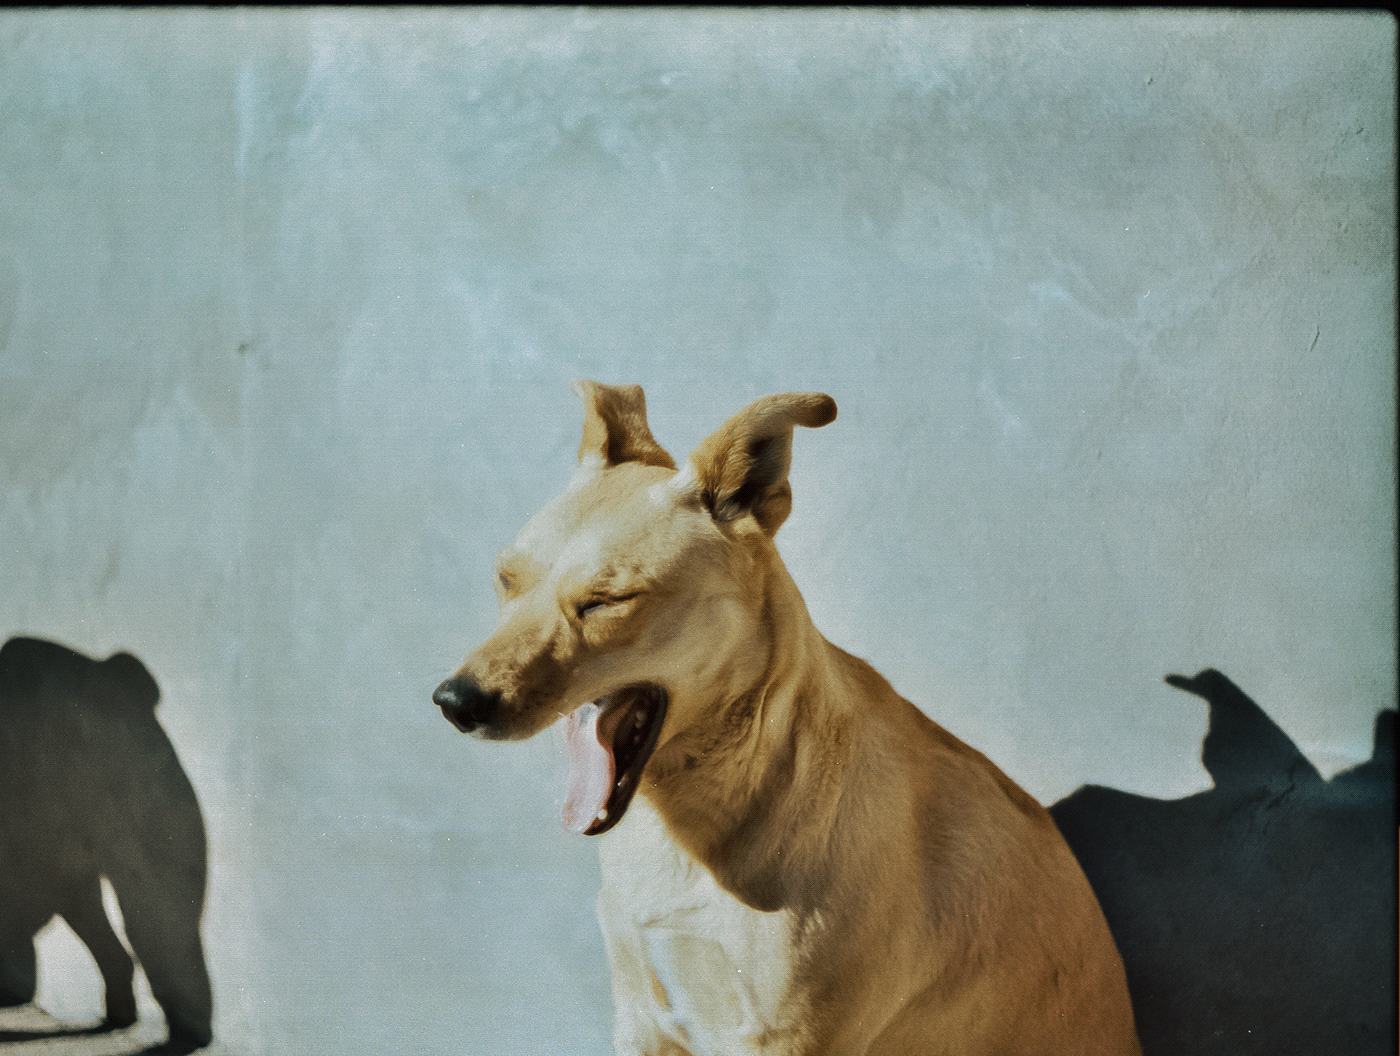 35mm analog photography Analogue dog film photography photographer photoshoot portrait Praktica